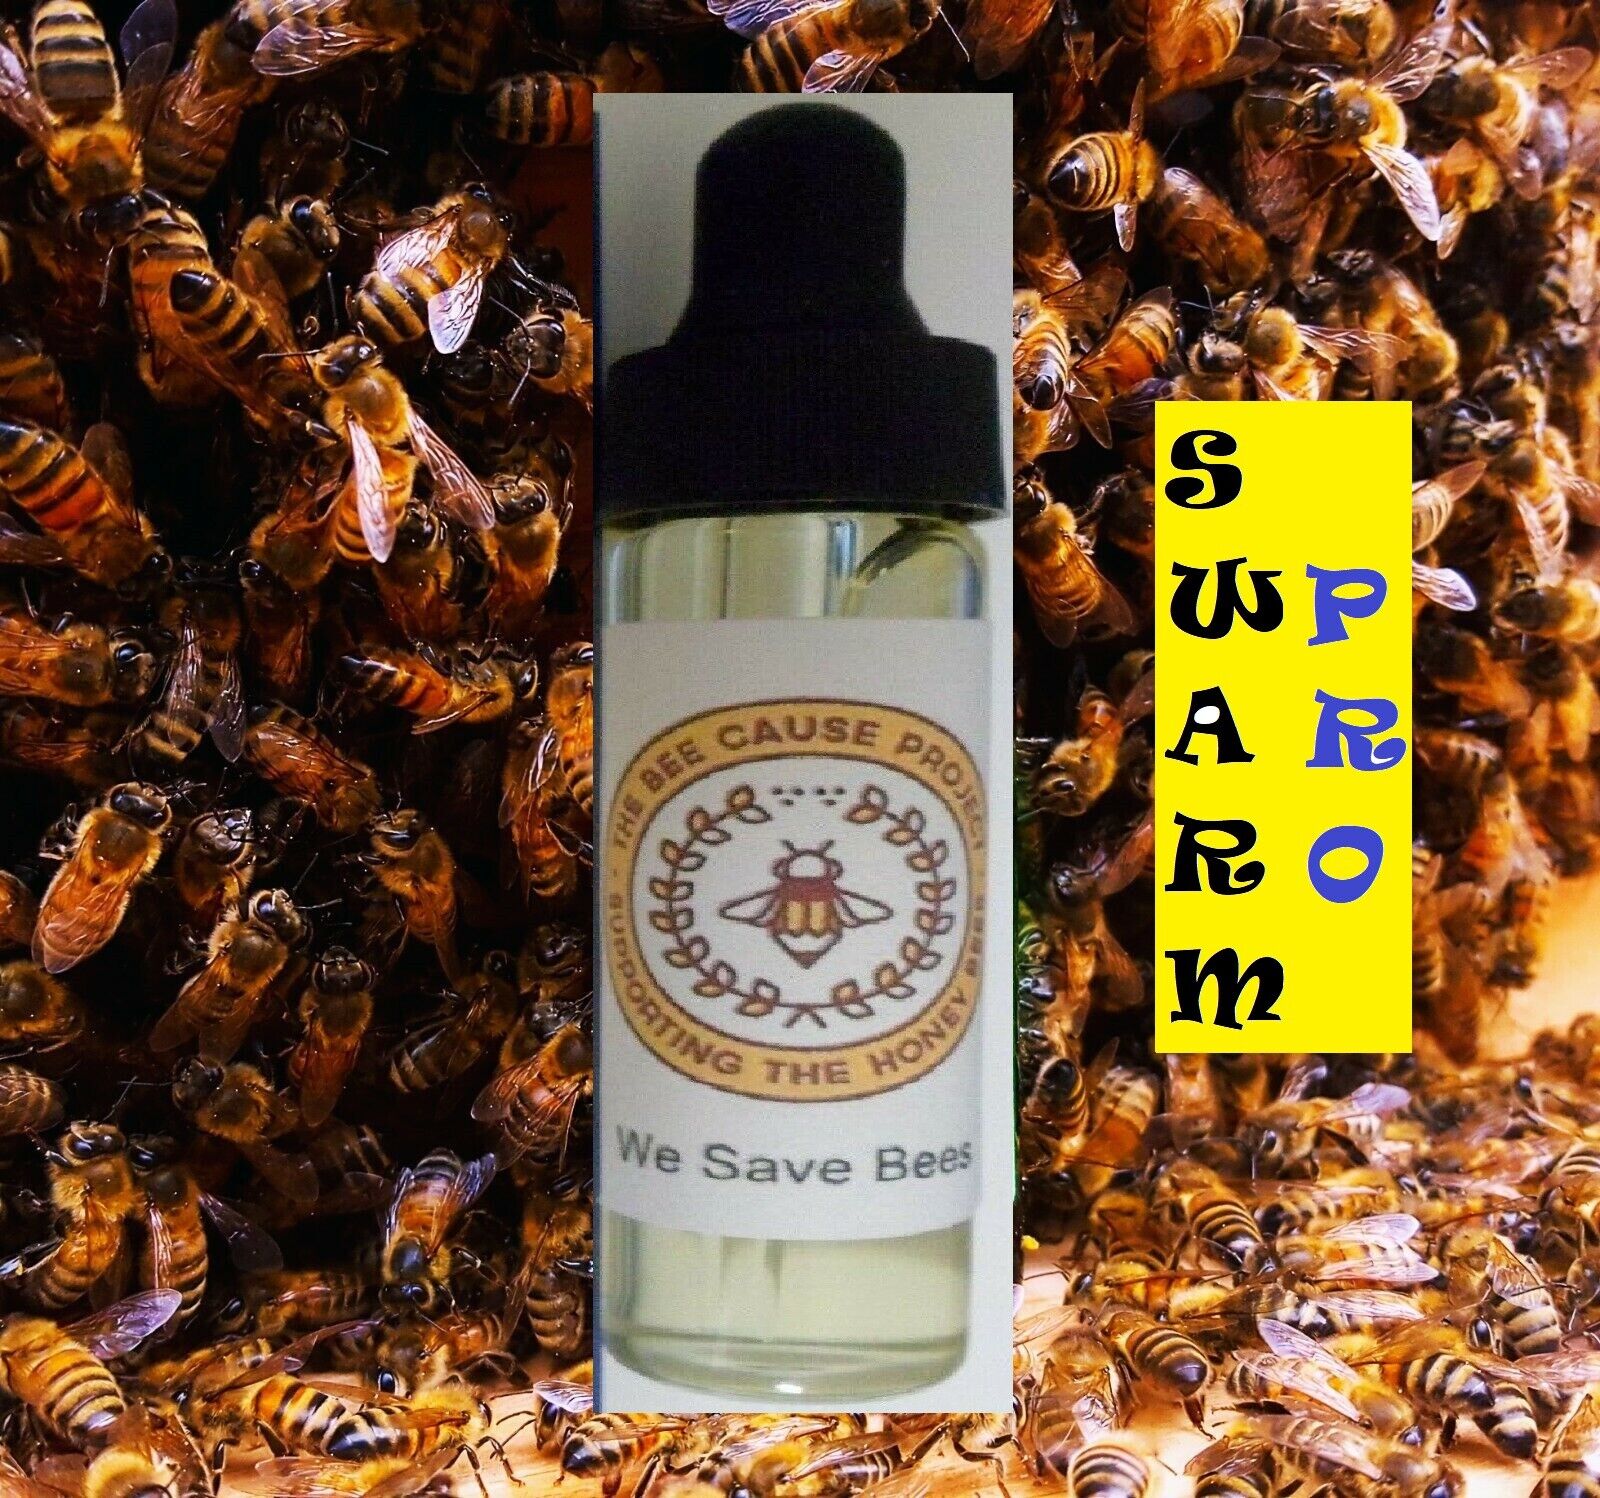 Honeybee Swarm Capture